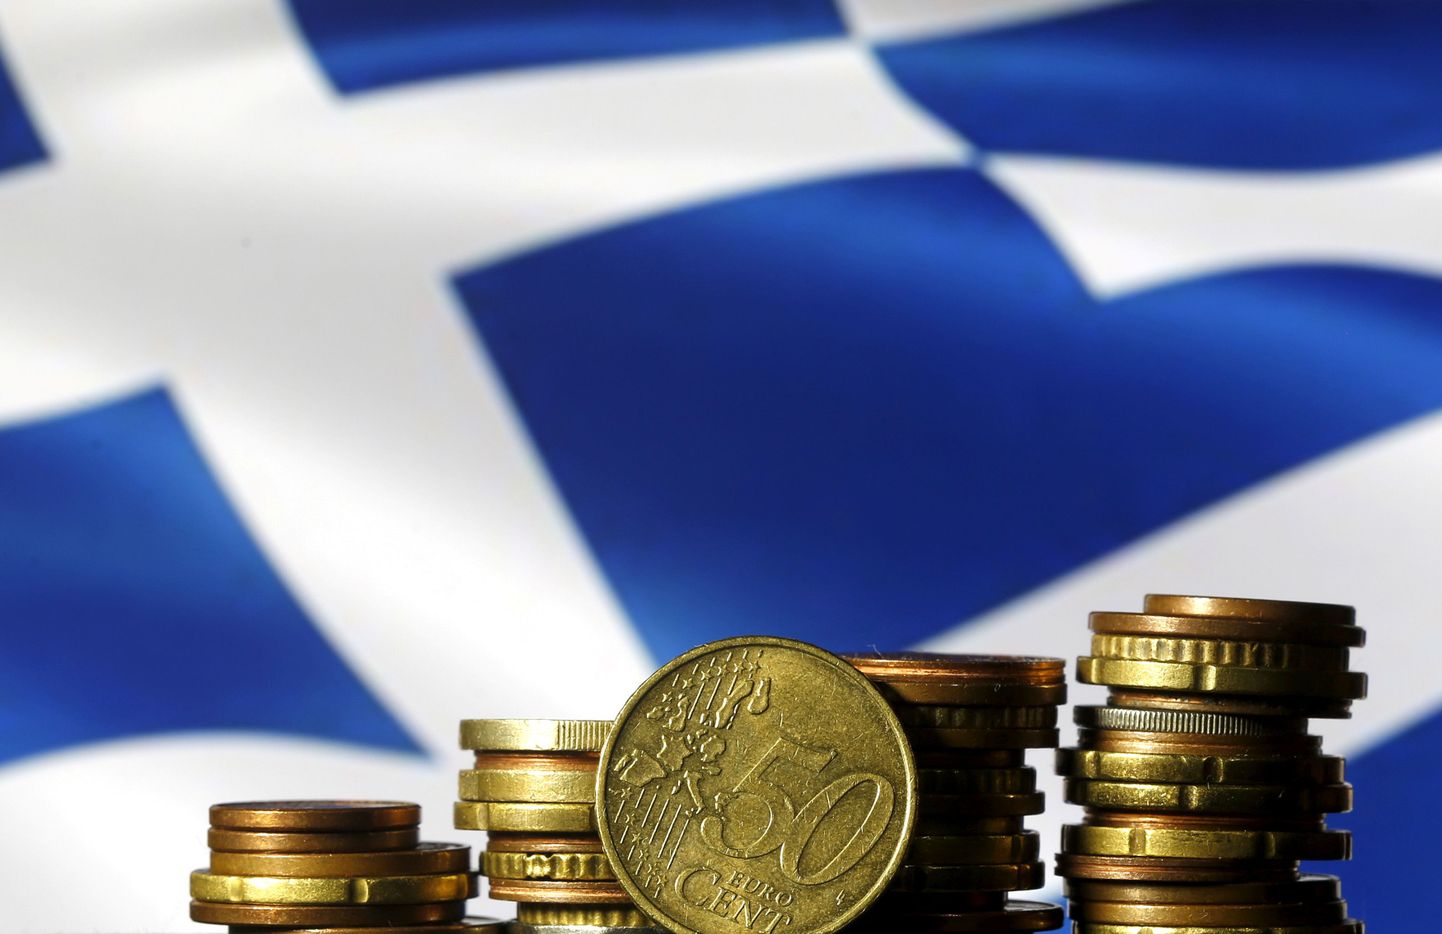 Kreeka on reformidega täitnud laenumakse tingimused.